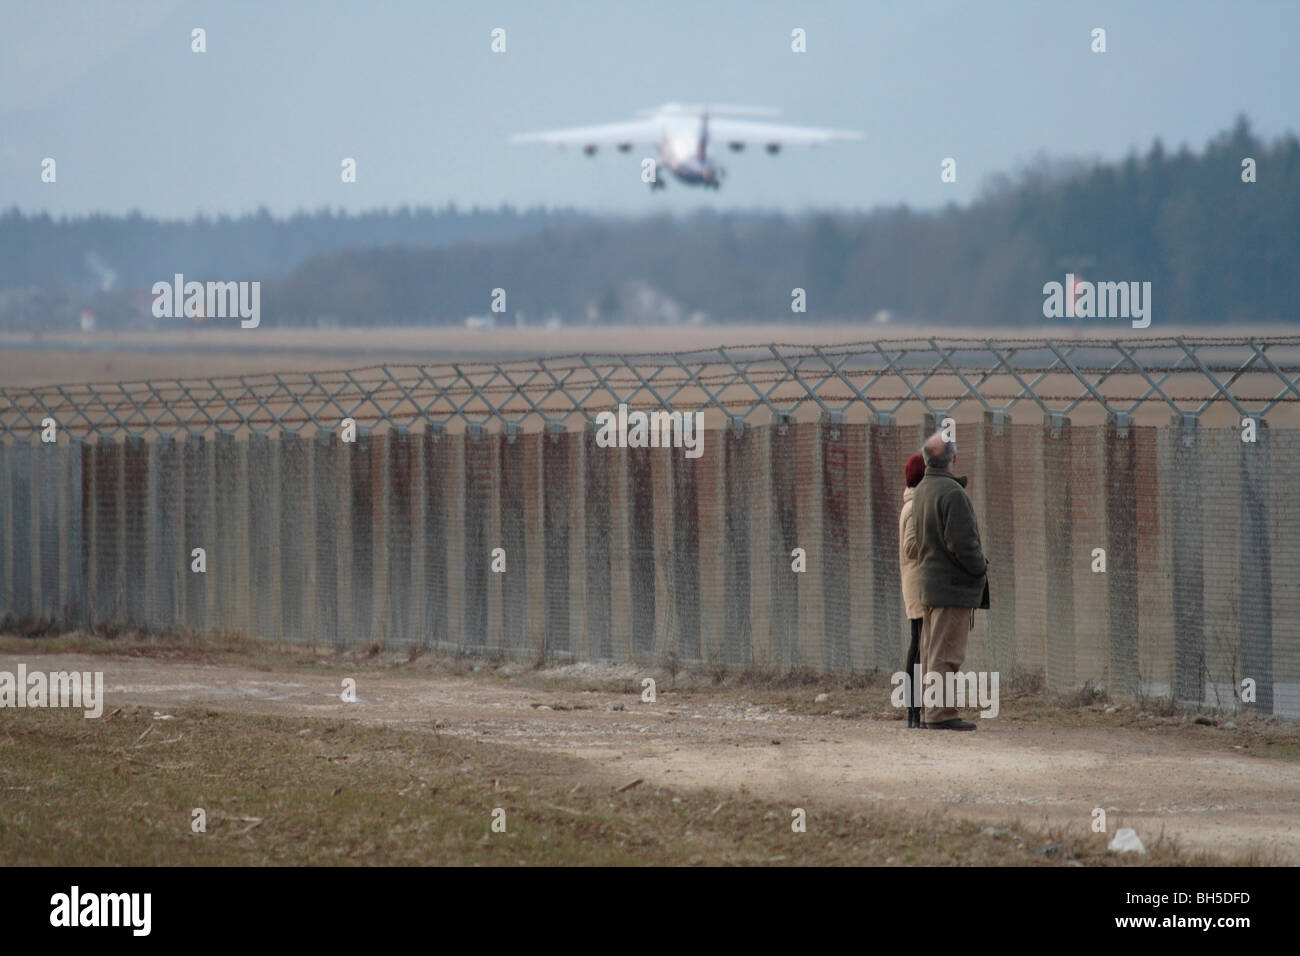 Les marcheurs devant la clôture périphérique de l'aéroport de Ljubljana qui regardent un avion qui déferle. Trafic aérien et aviation. Banque D'Images